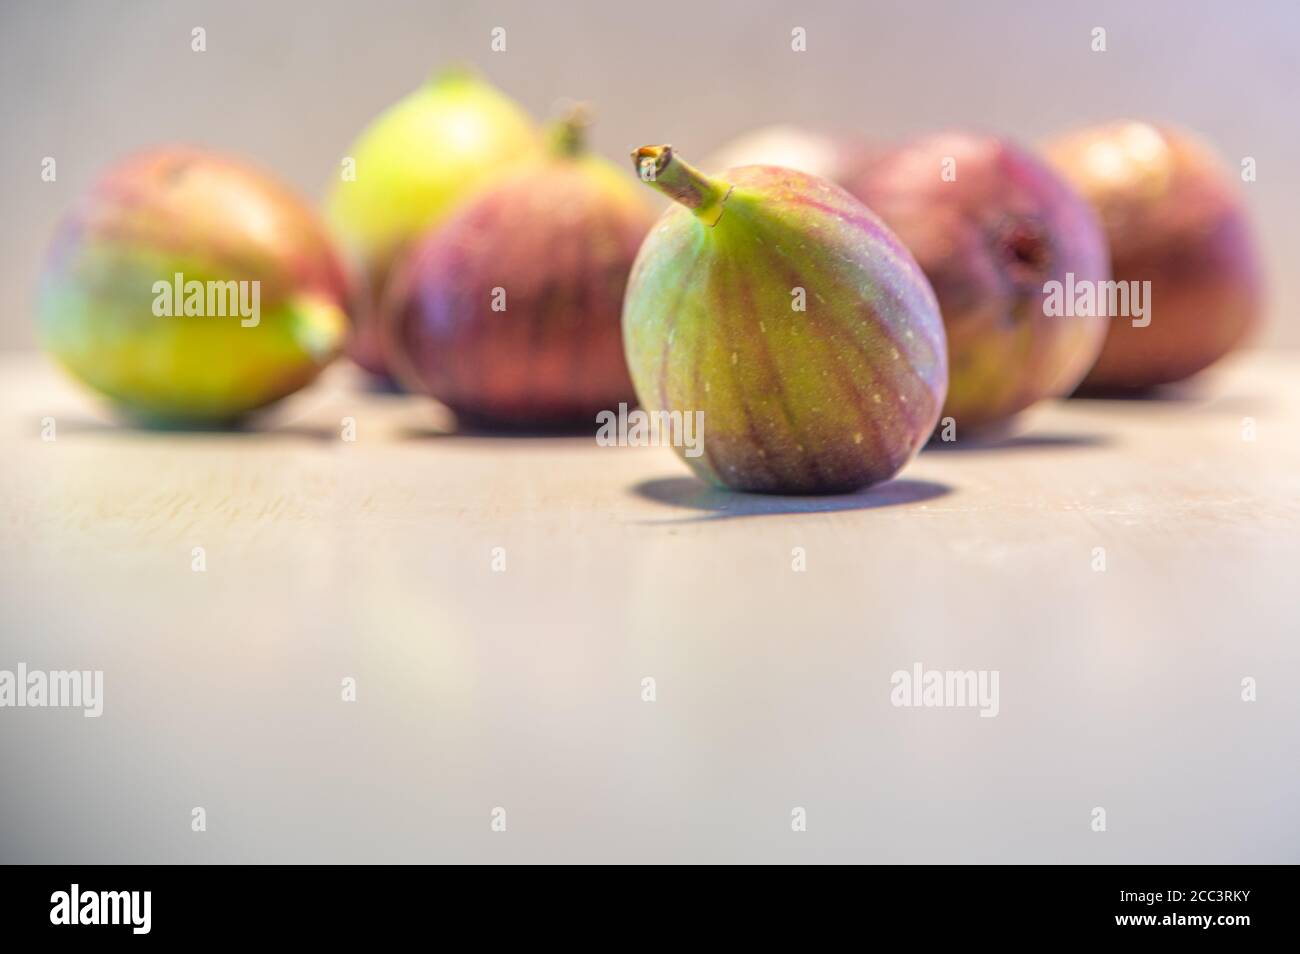 Fichi freschi. Pur essendo nota come frutta, è infatti un'infutescenza, cioè un insieme chiamato siconio, che contiene il vero frutto chiamato achene. Foto Stock